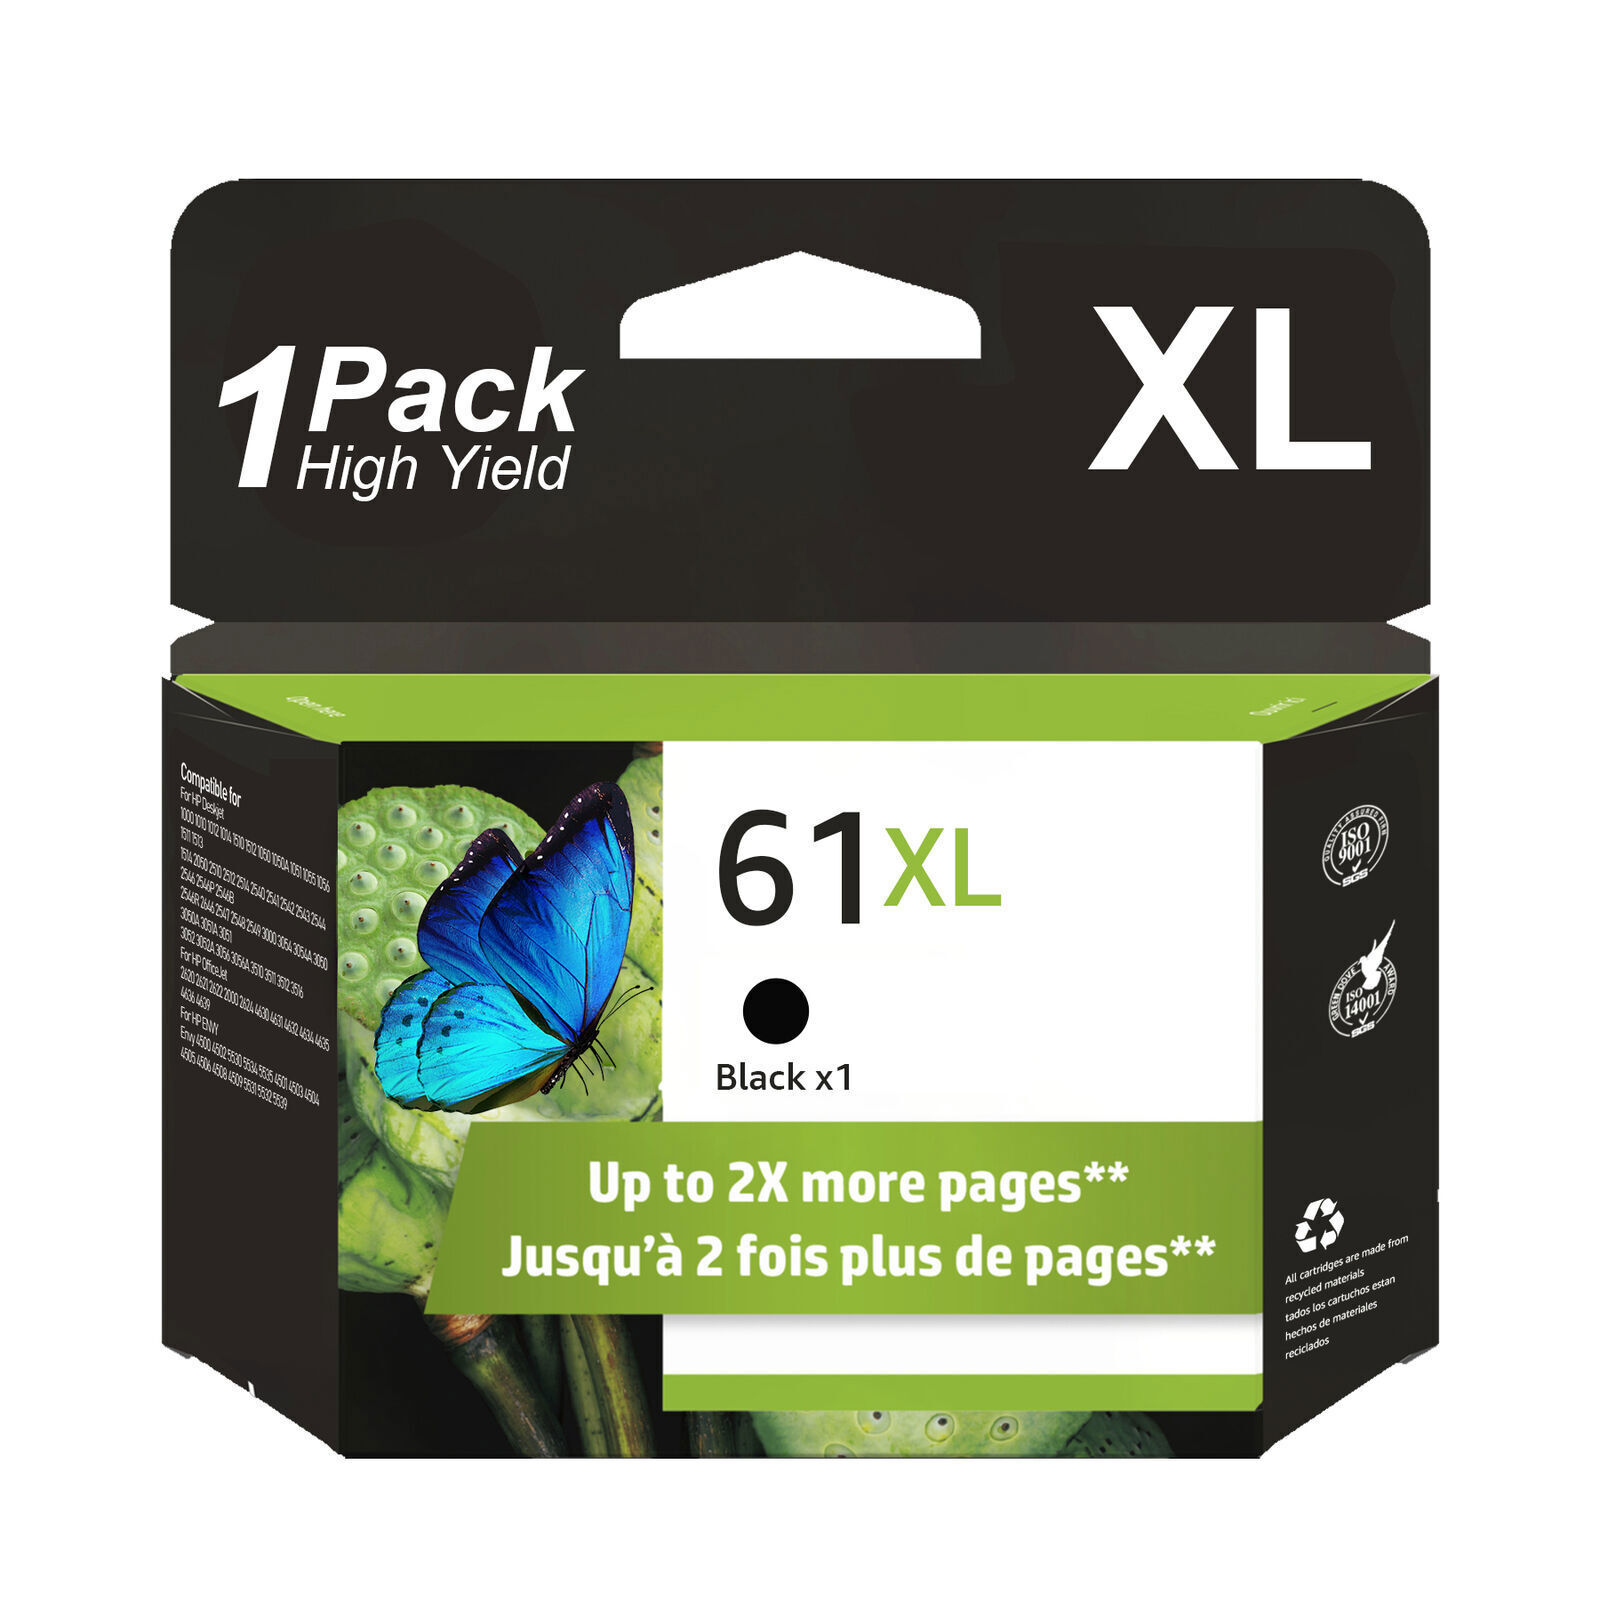 61 XL Black Color Ink Cartridges For HP ENVY 4500 4501 4502 4504 5530 5531 5535